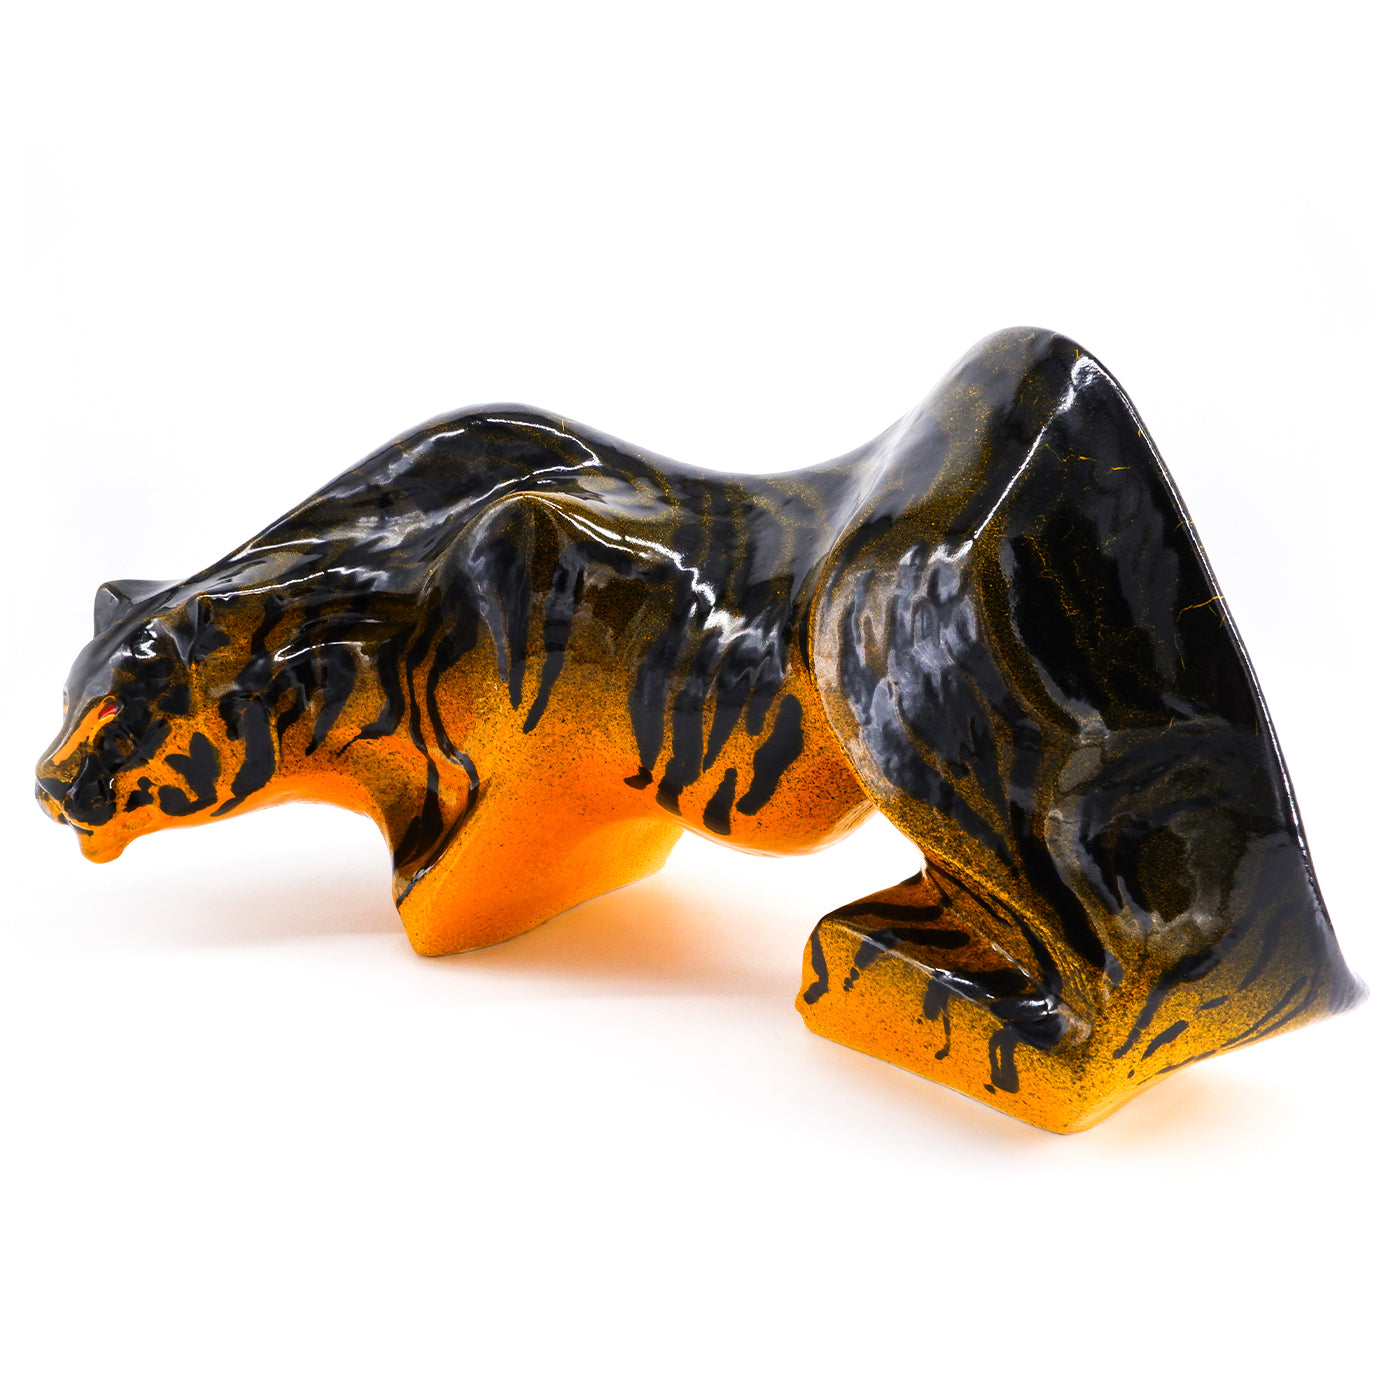 Escultura Tora negra y naranja - Vista alternativa 1